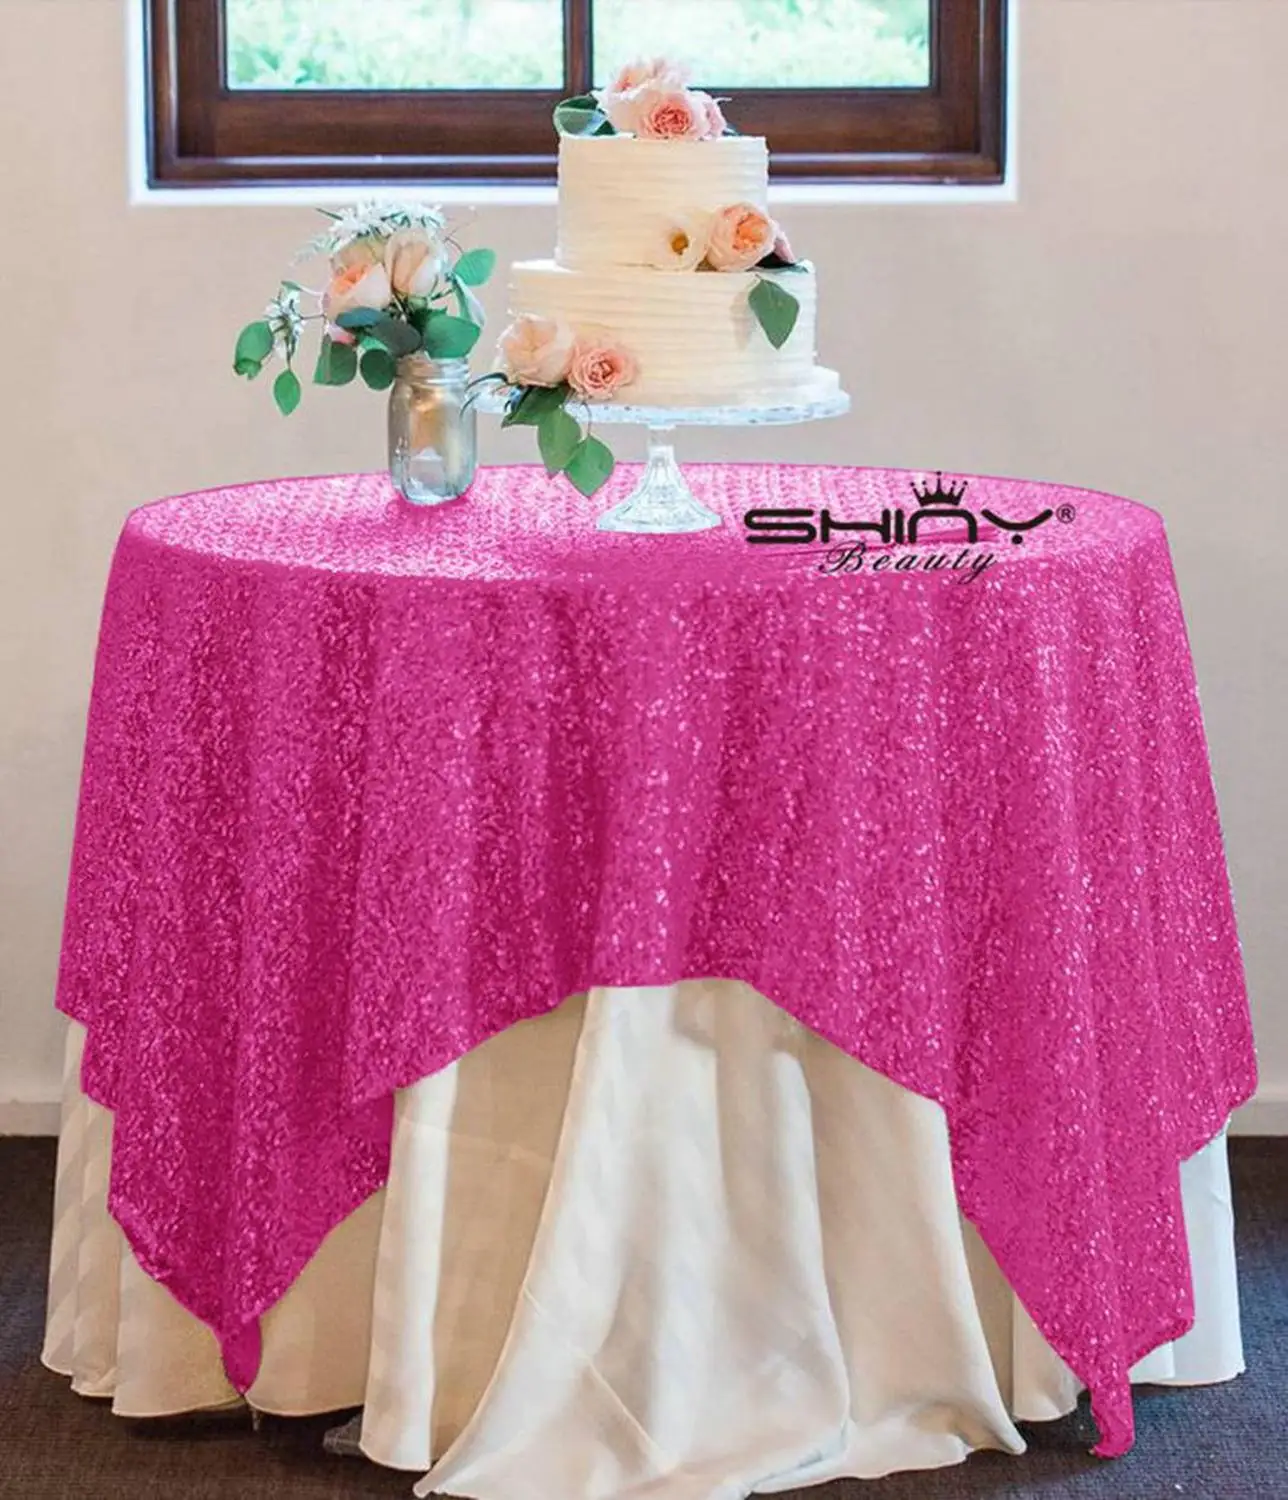 72x108-дюймовая прямоугольная скатерть с блестками с розовыми блестками, крышка стола, пурпурные блестящие текстильные скатерти для прямоугольной Tables-M0928